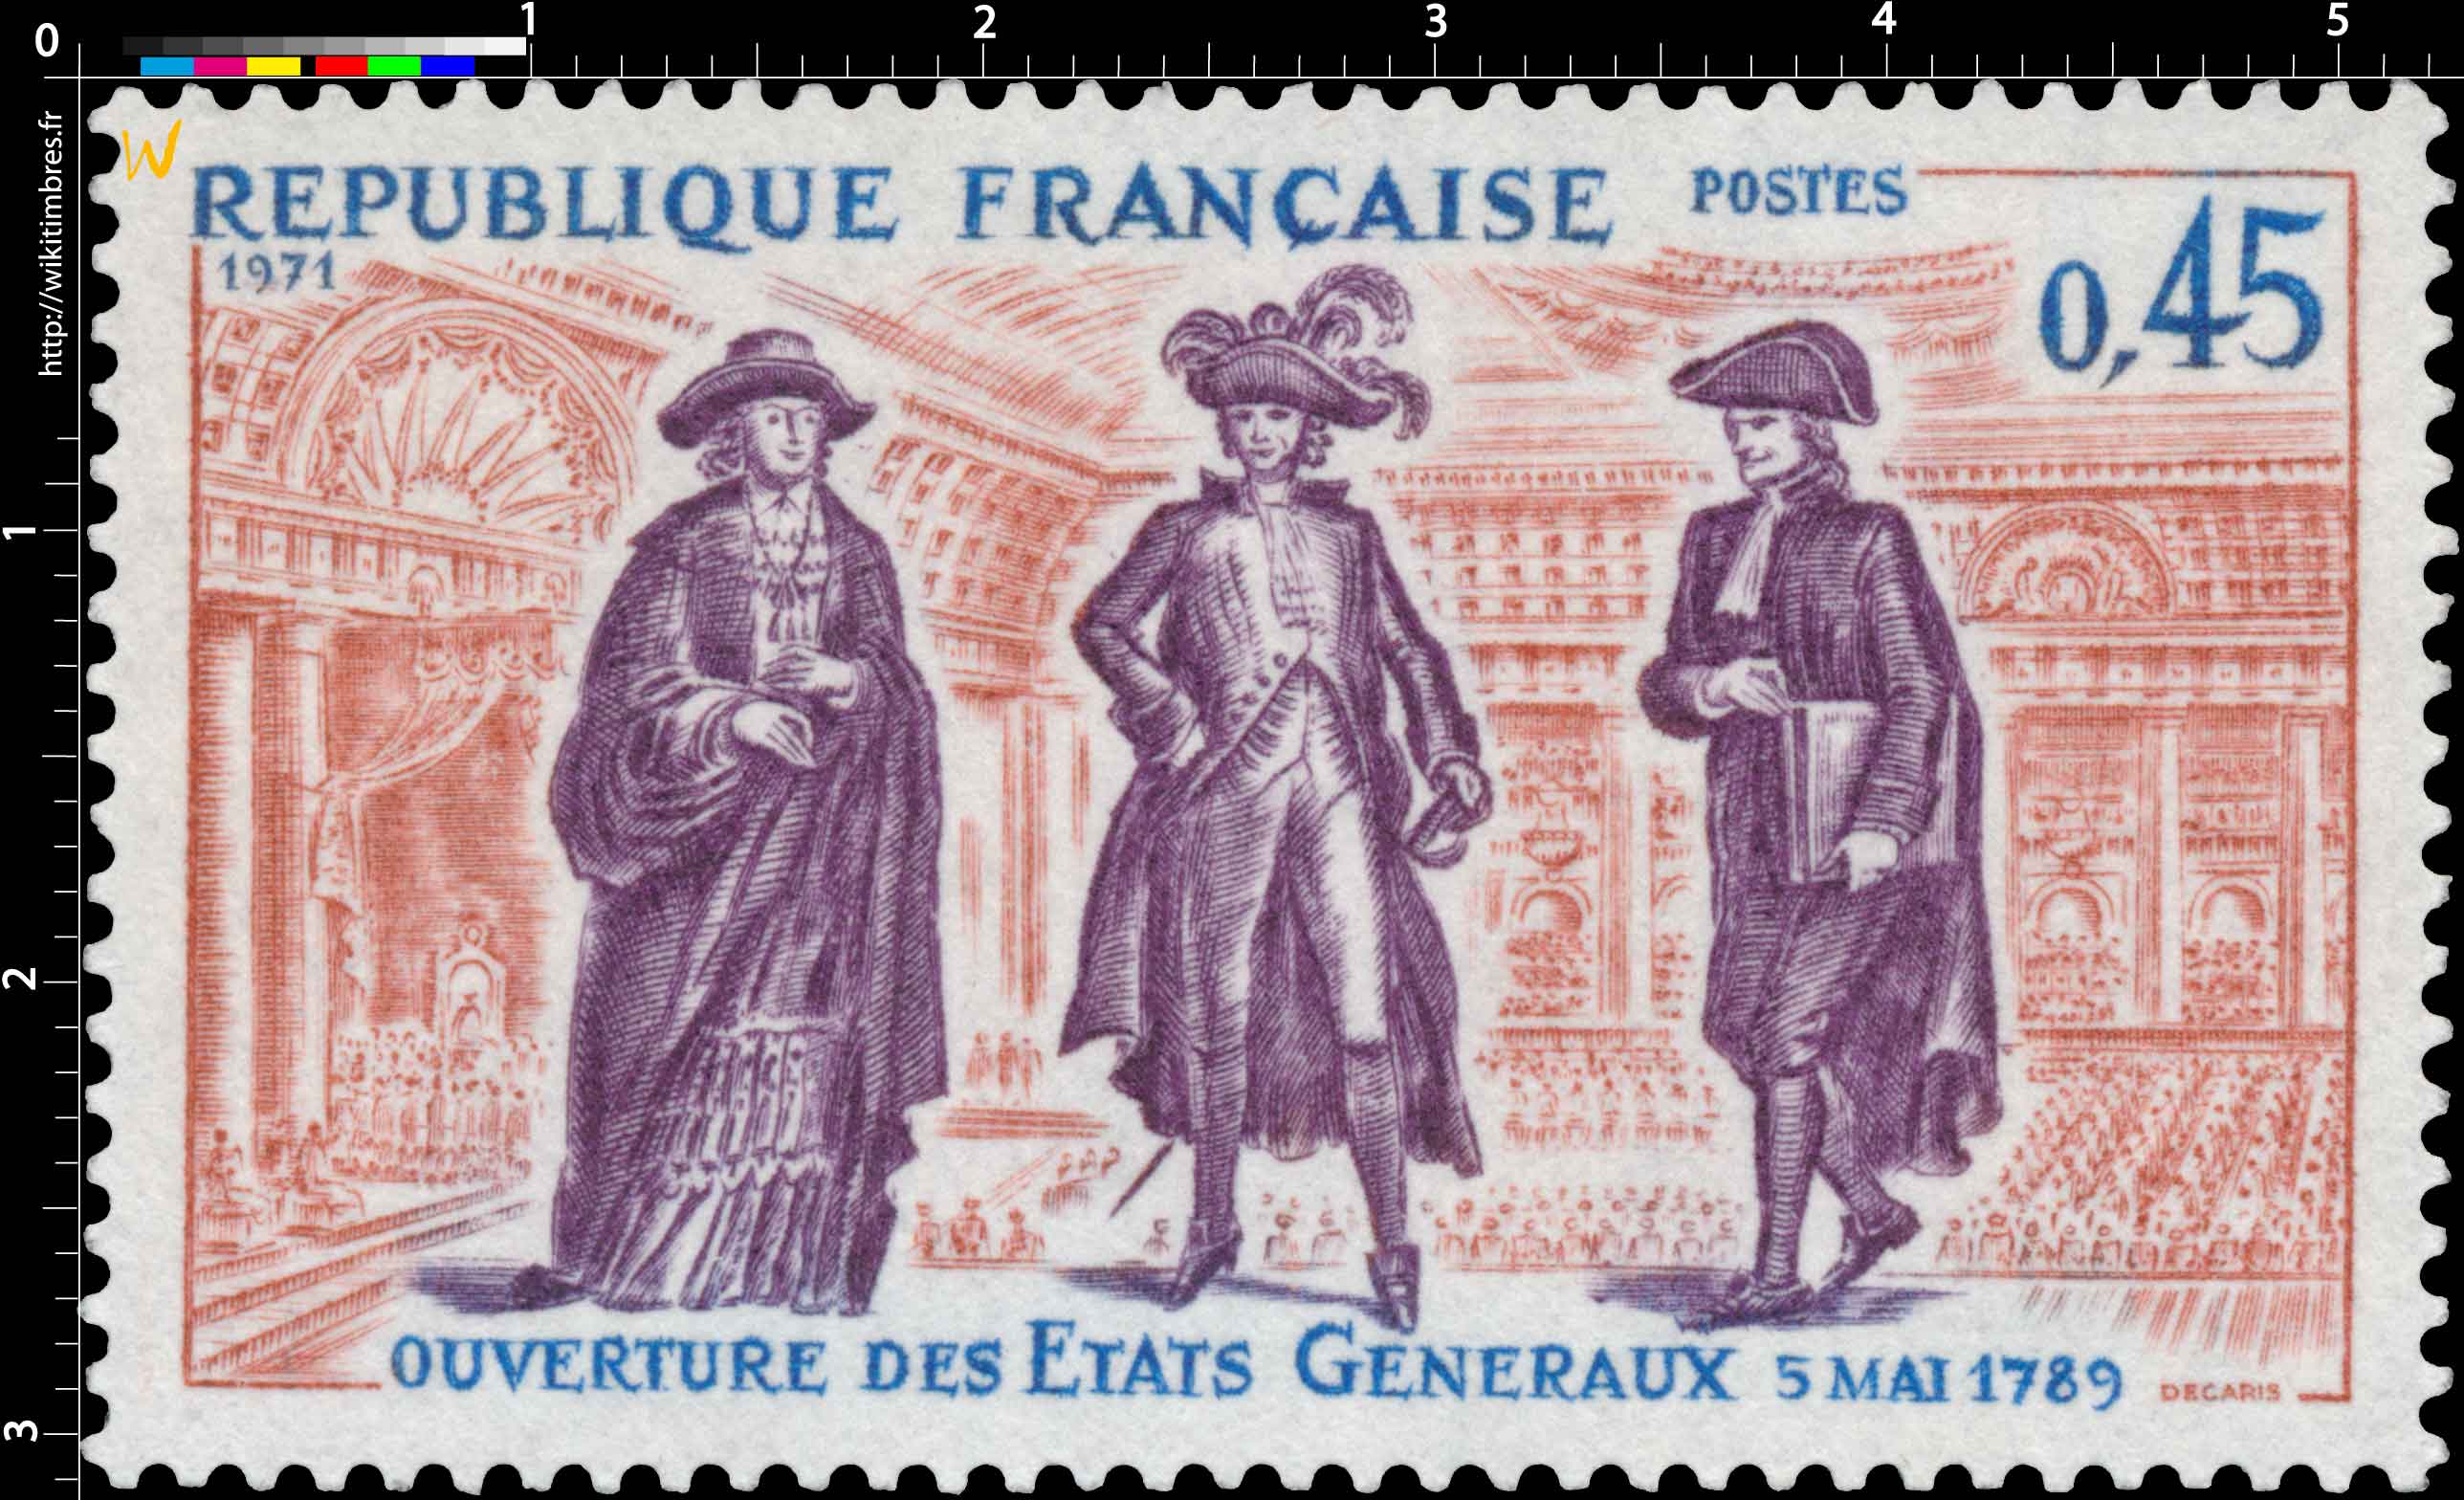 1971 OUVERTURE DES ÉTATS GÉNÉRAUX 5 mai 1789